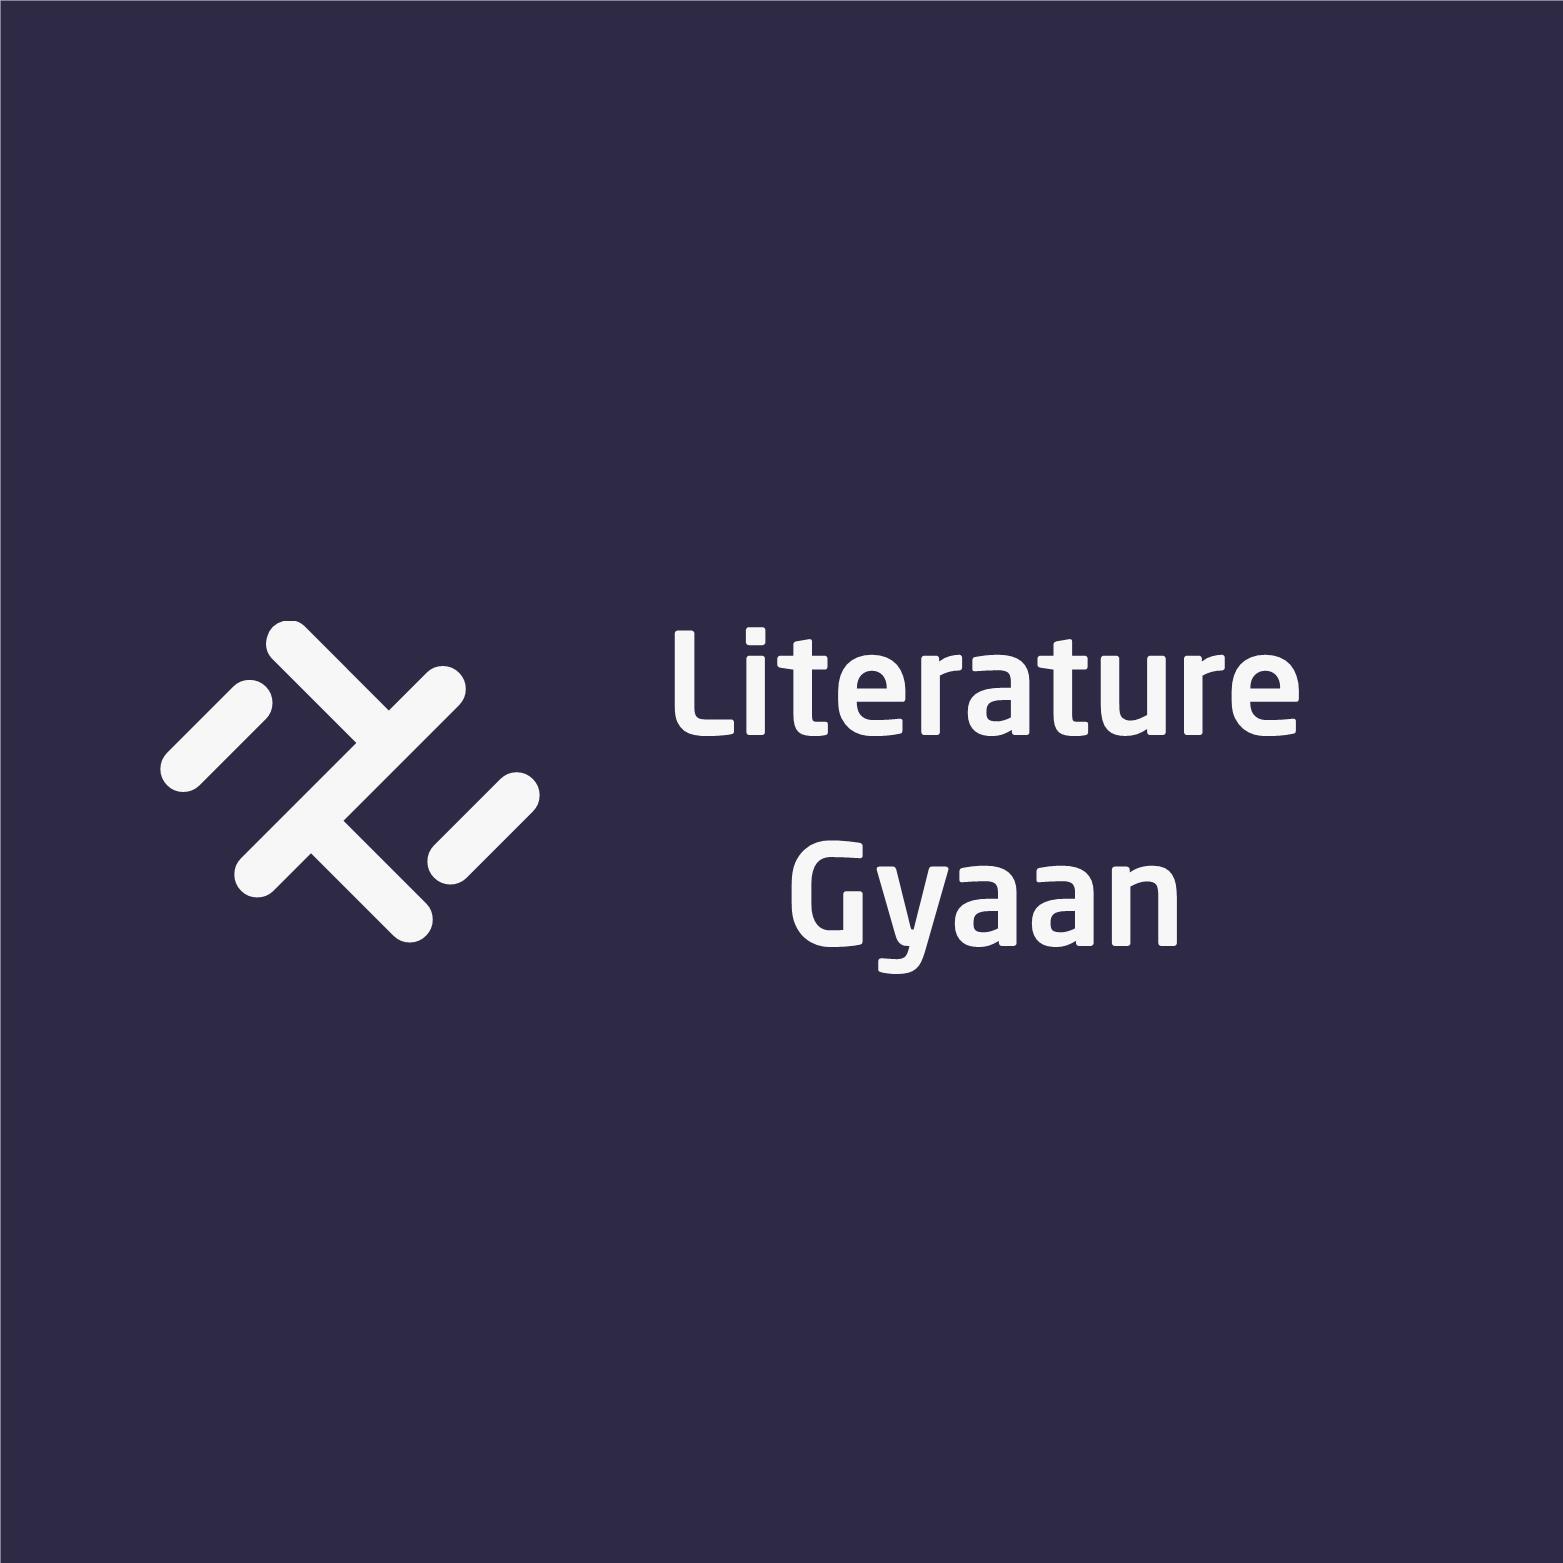 Literature Gyaan